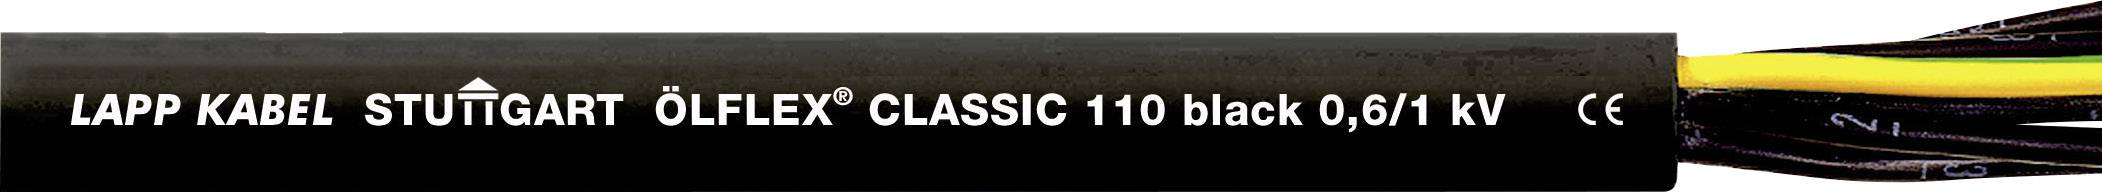 LAPP ÖLFLEX CLASSIC BLACK 110 Steuerleitung 7 G 1.50 mm² Schwarz 1120314-1 Meterware